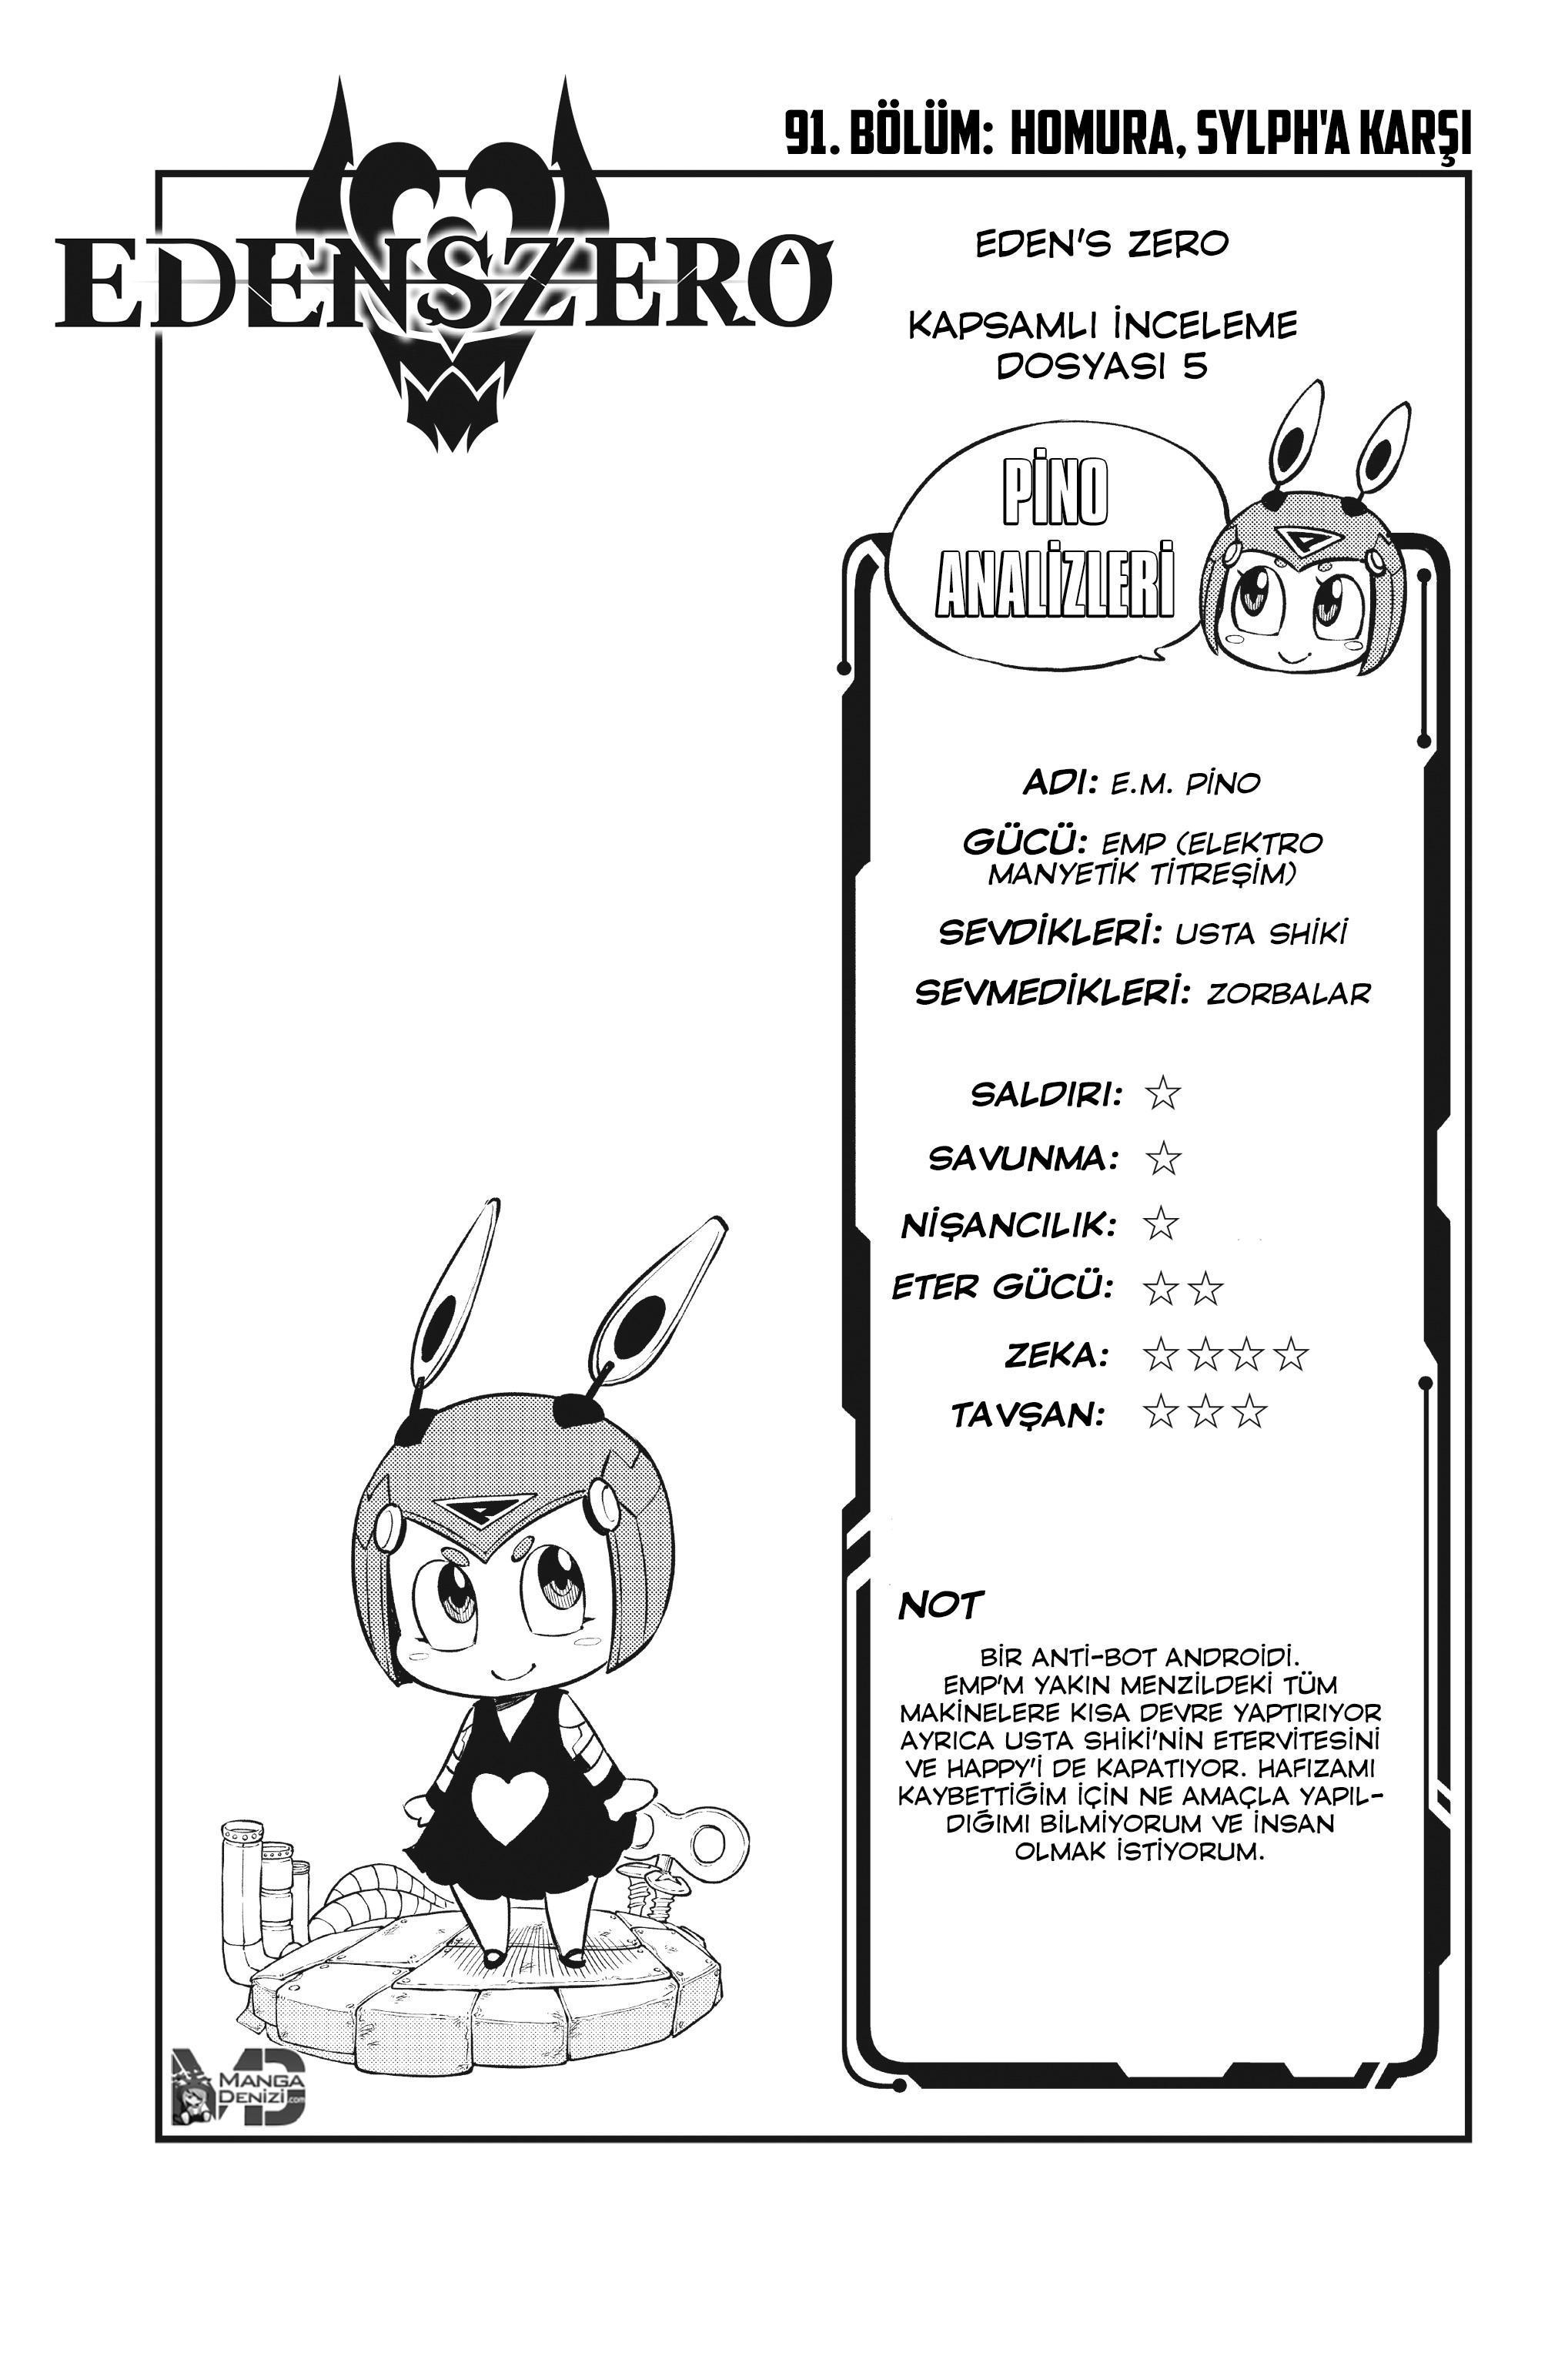 Eden's Zero mangasının 091 bölümünün 2. sayfasını okuyorsunuz.